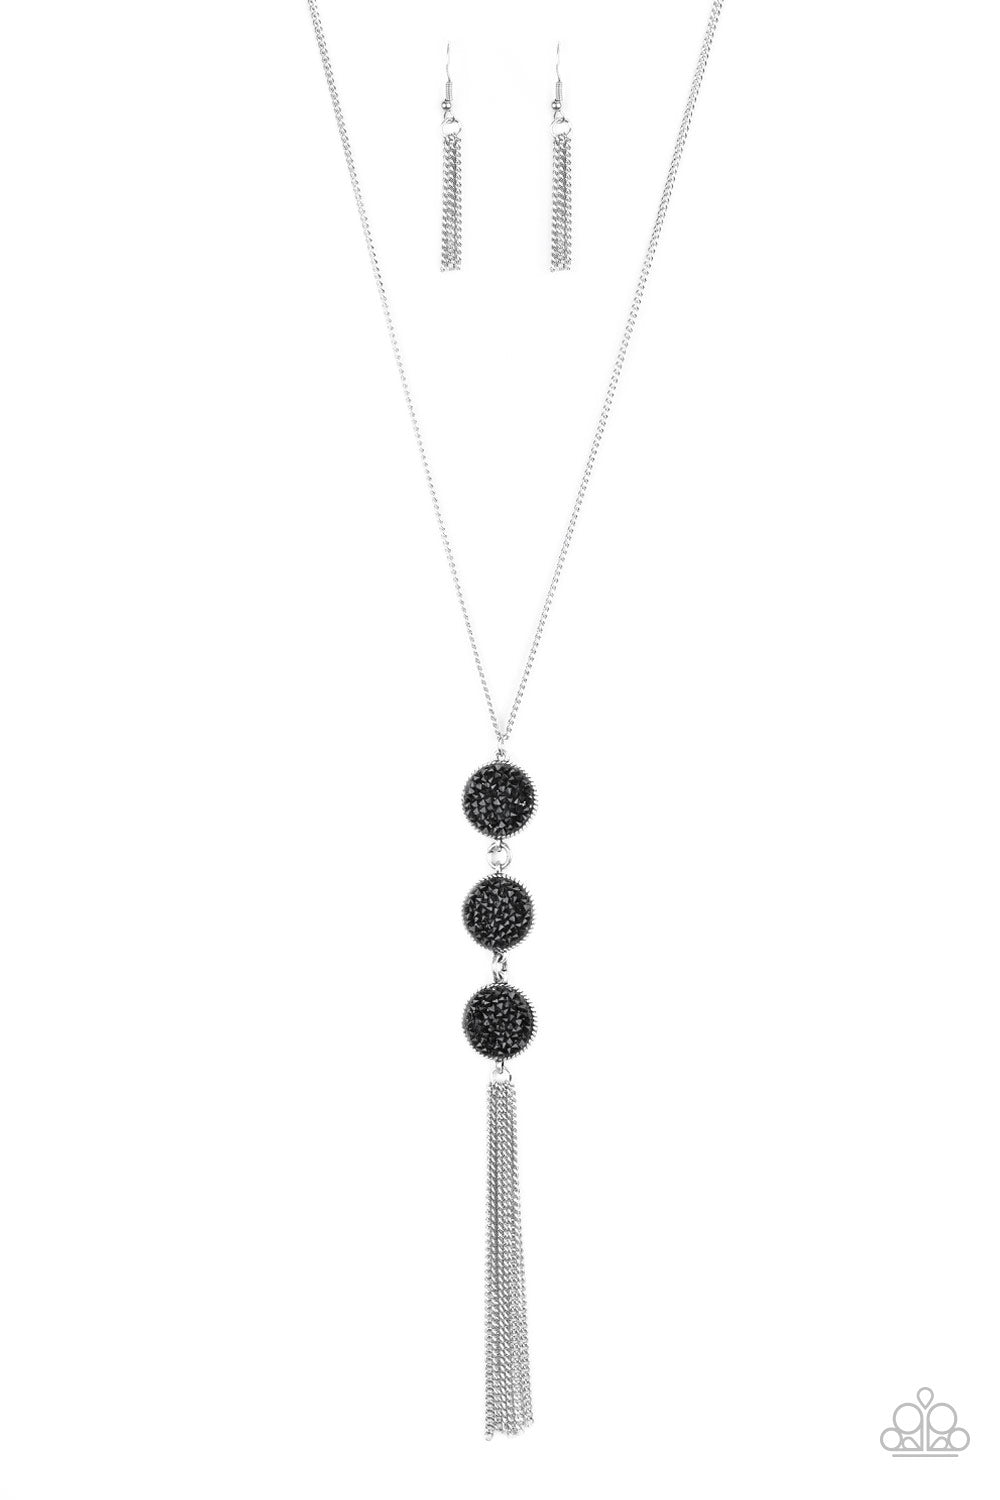 Triple Shimmer - Black Necklace Set - Princess Glam Shop